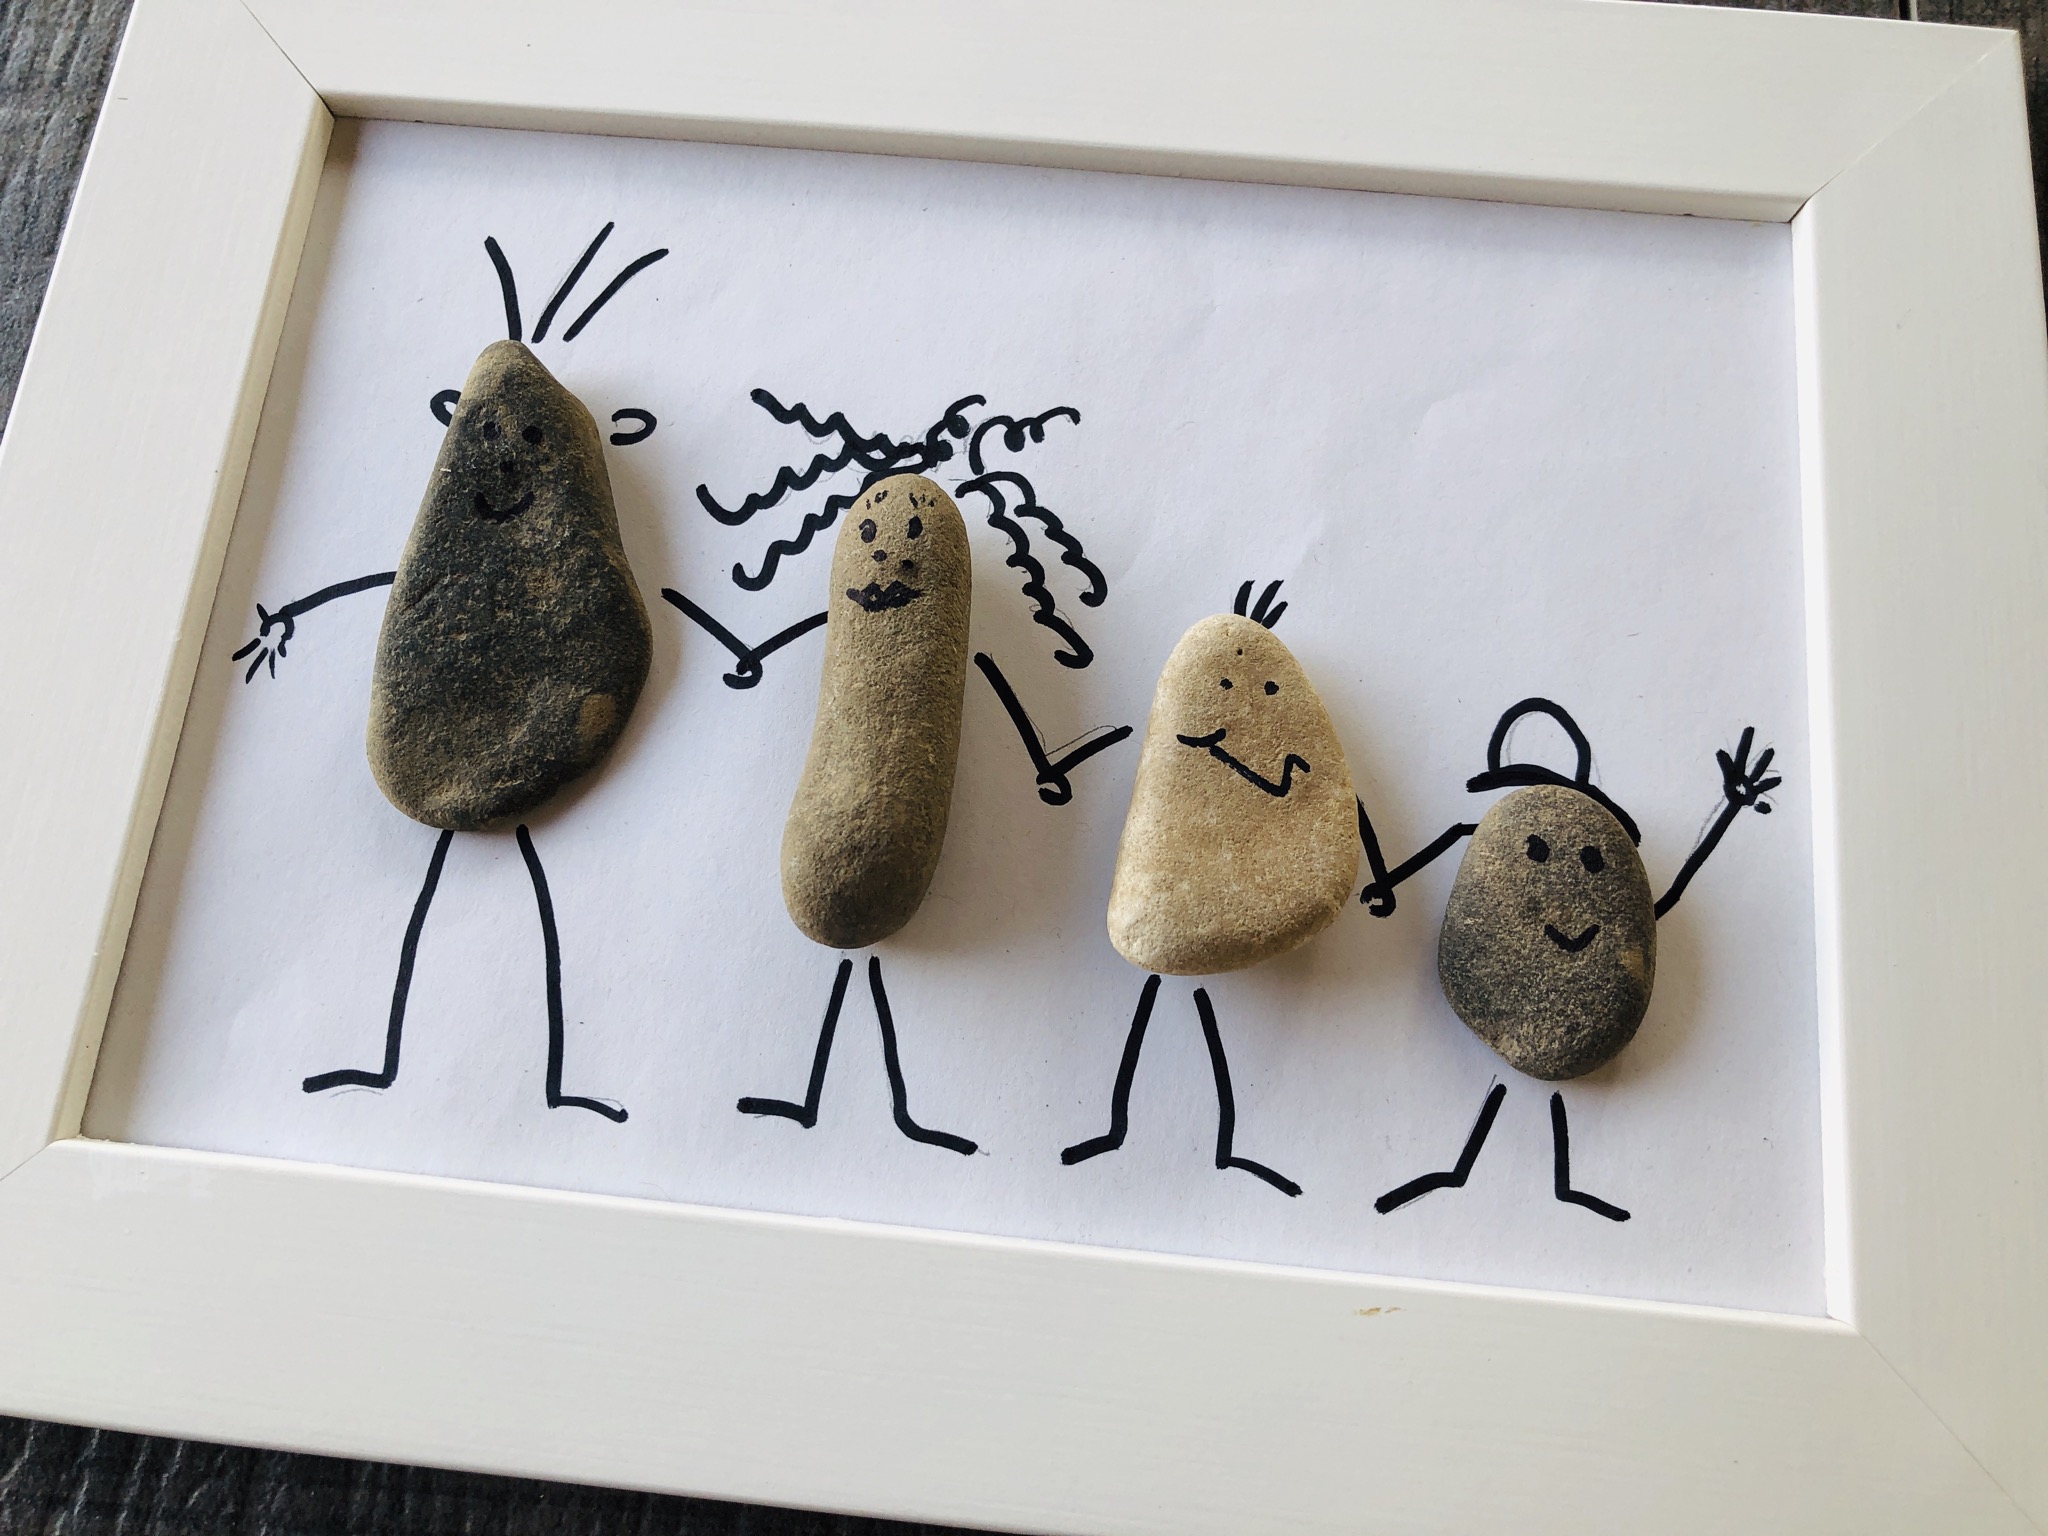 Bild zum Schritt 9 für die Kinder-Beschäftigung: 'Abschließend klebt die Steine mit Heißkleber auf die Glasscheibe.'